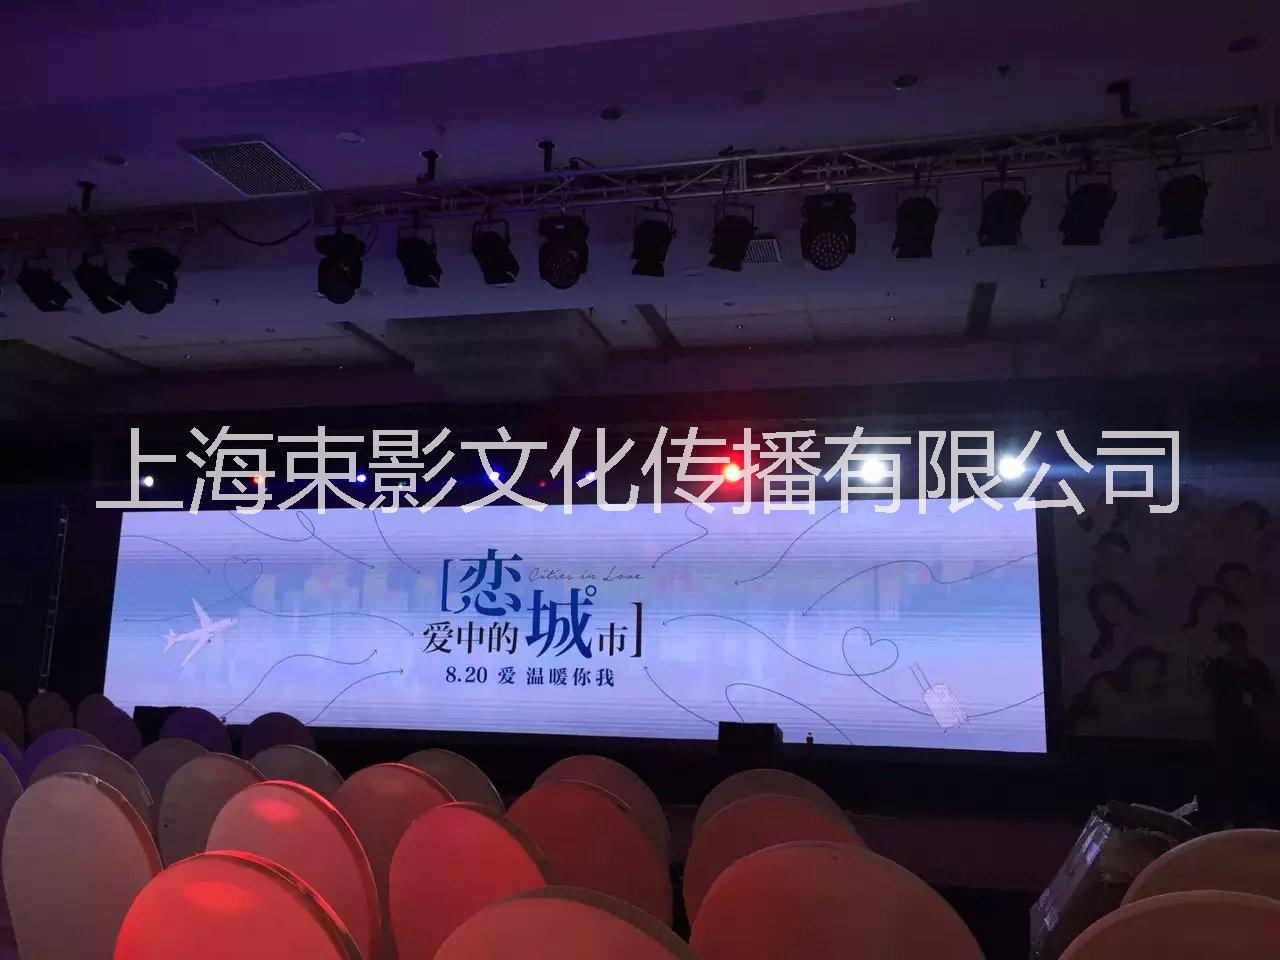 供应上海服装发布会电脑灯logo灯租赁图片